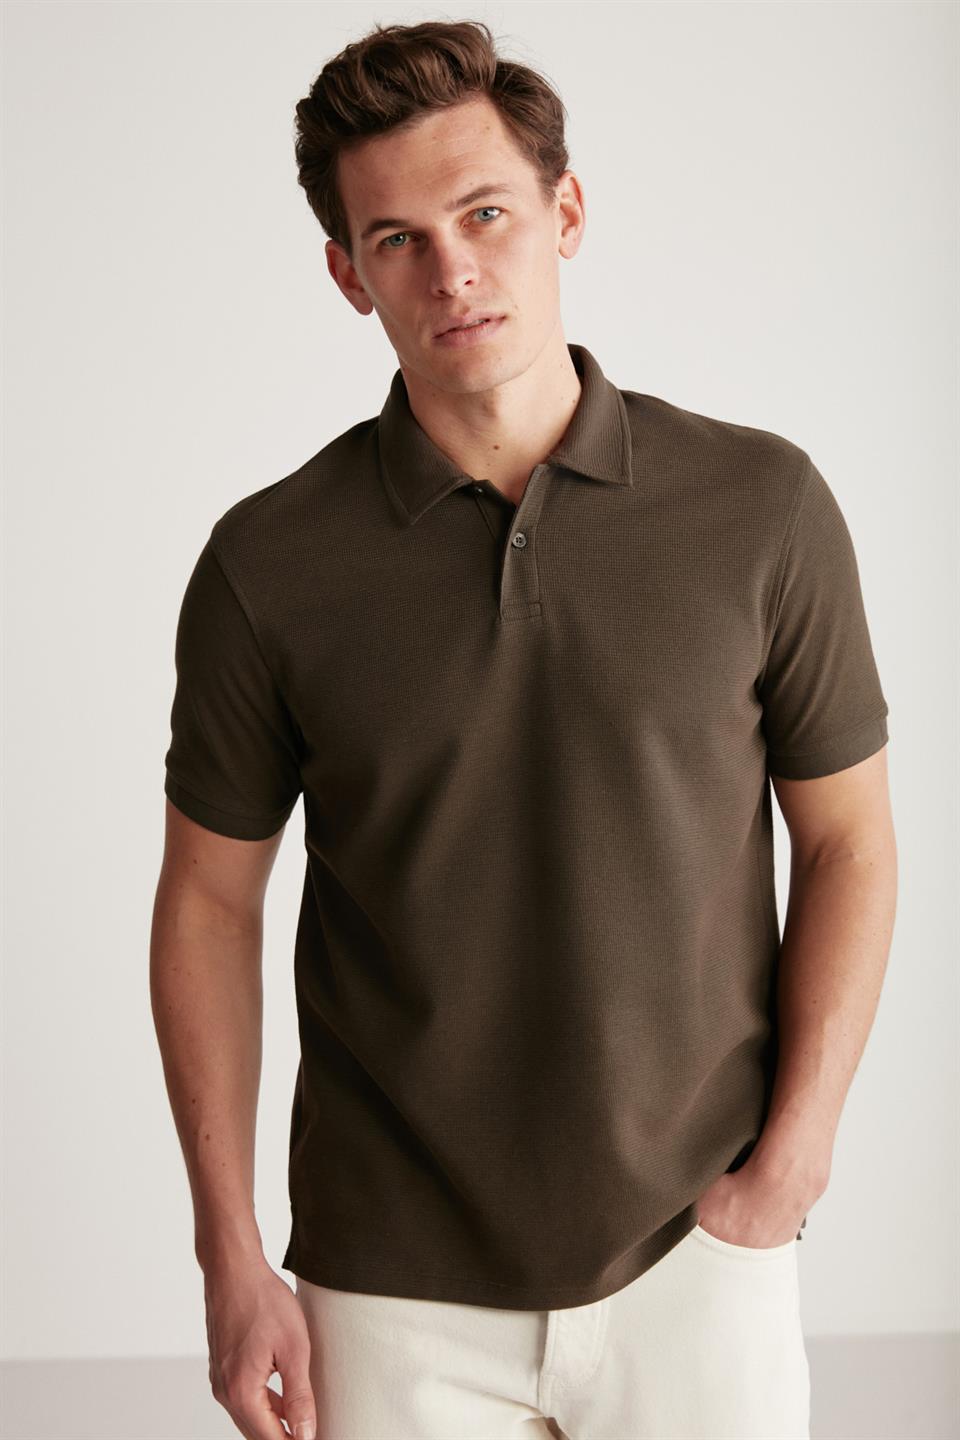 Erkek Tişört Modelleri & Erkek Tişört Fiyatları | Grimelange